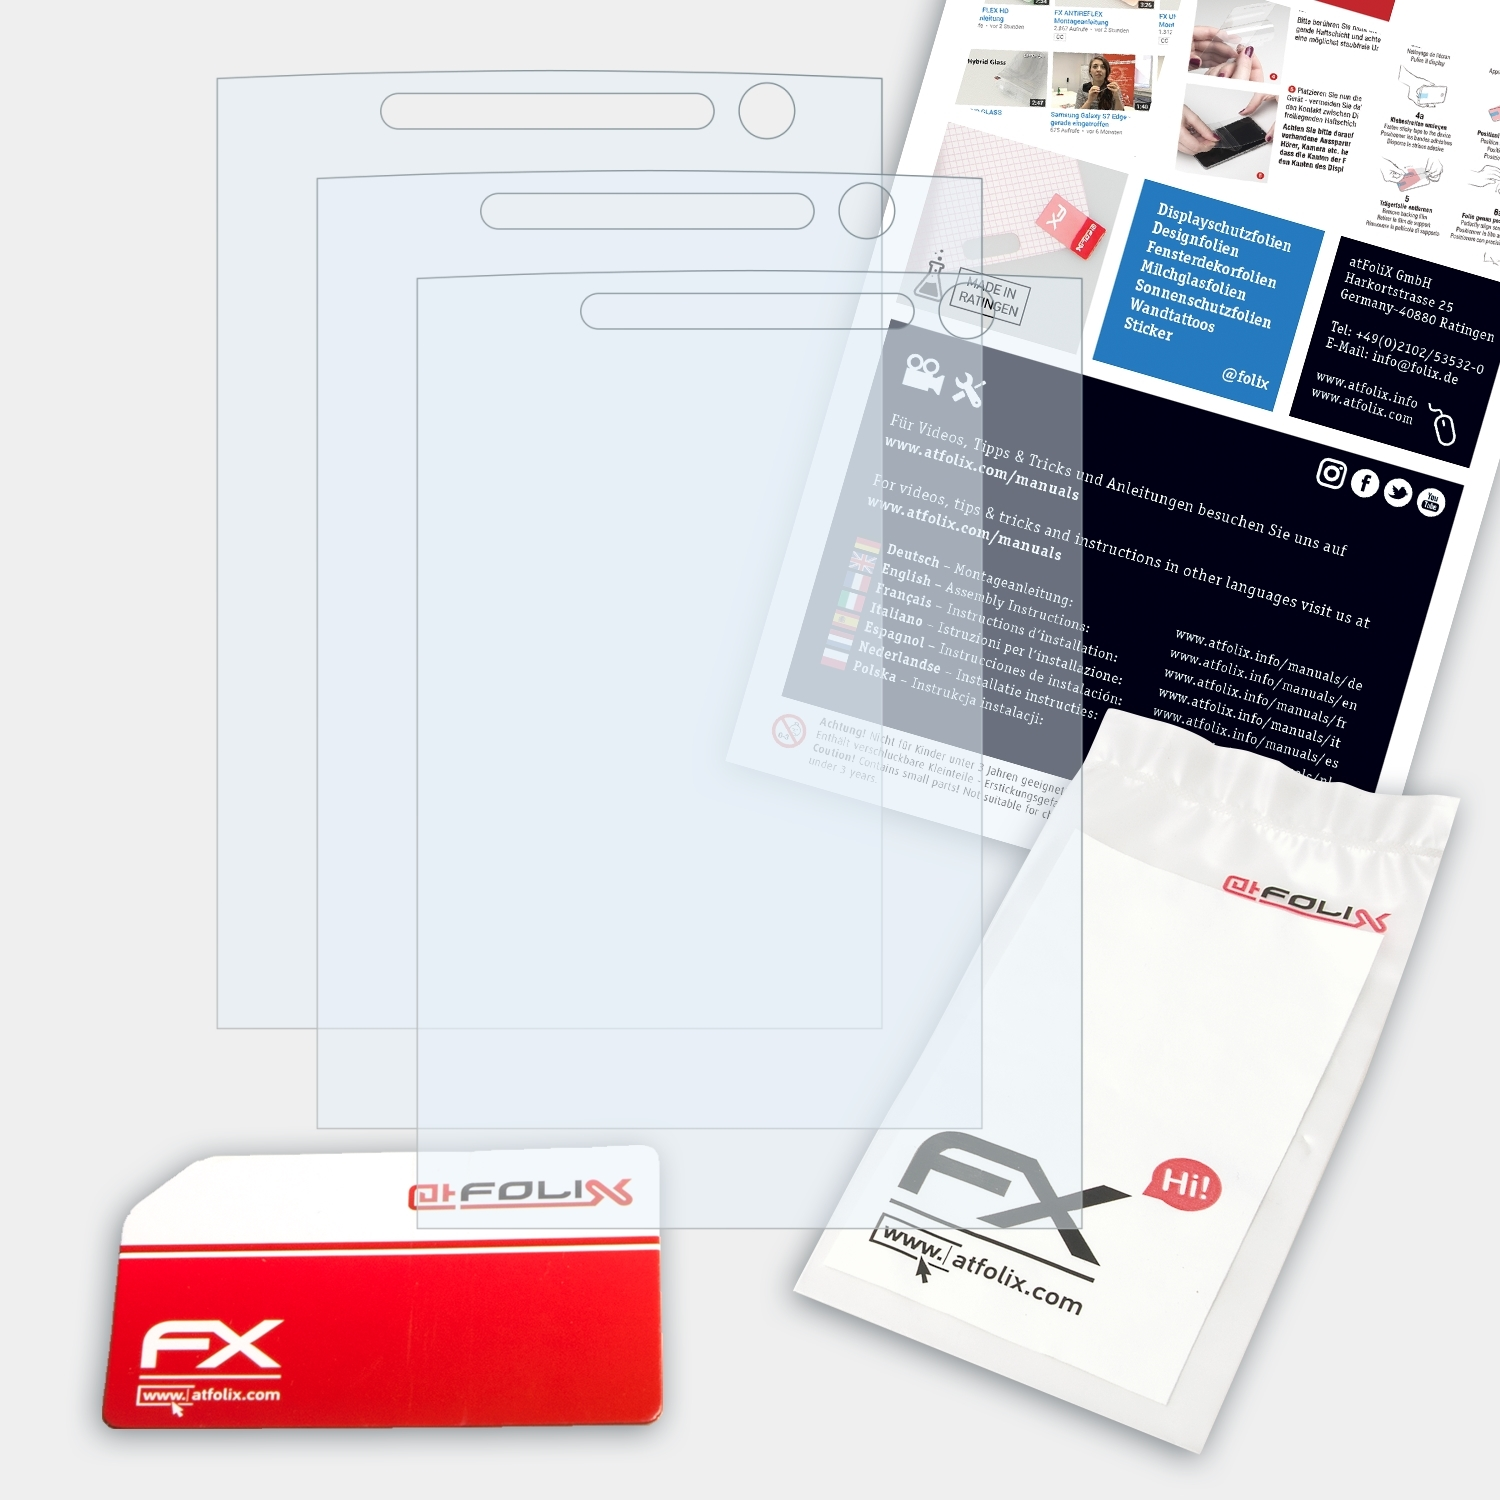 FX-Clear Sony-Ericsson Displayschutz(für 3x C702) ATFOLIX